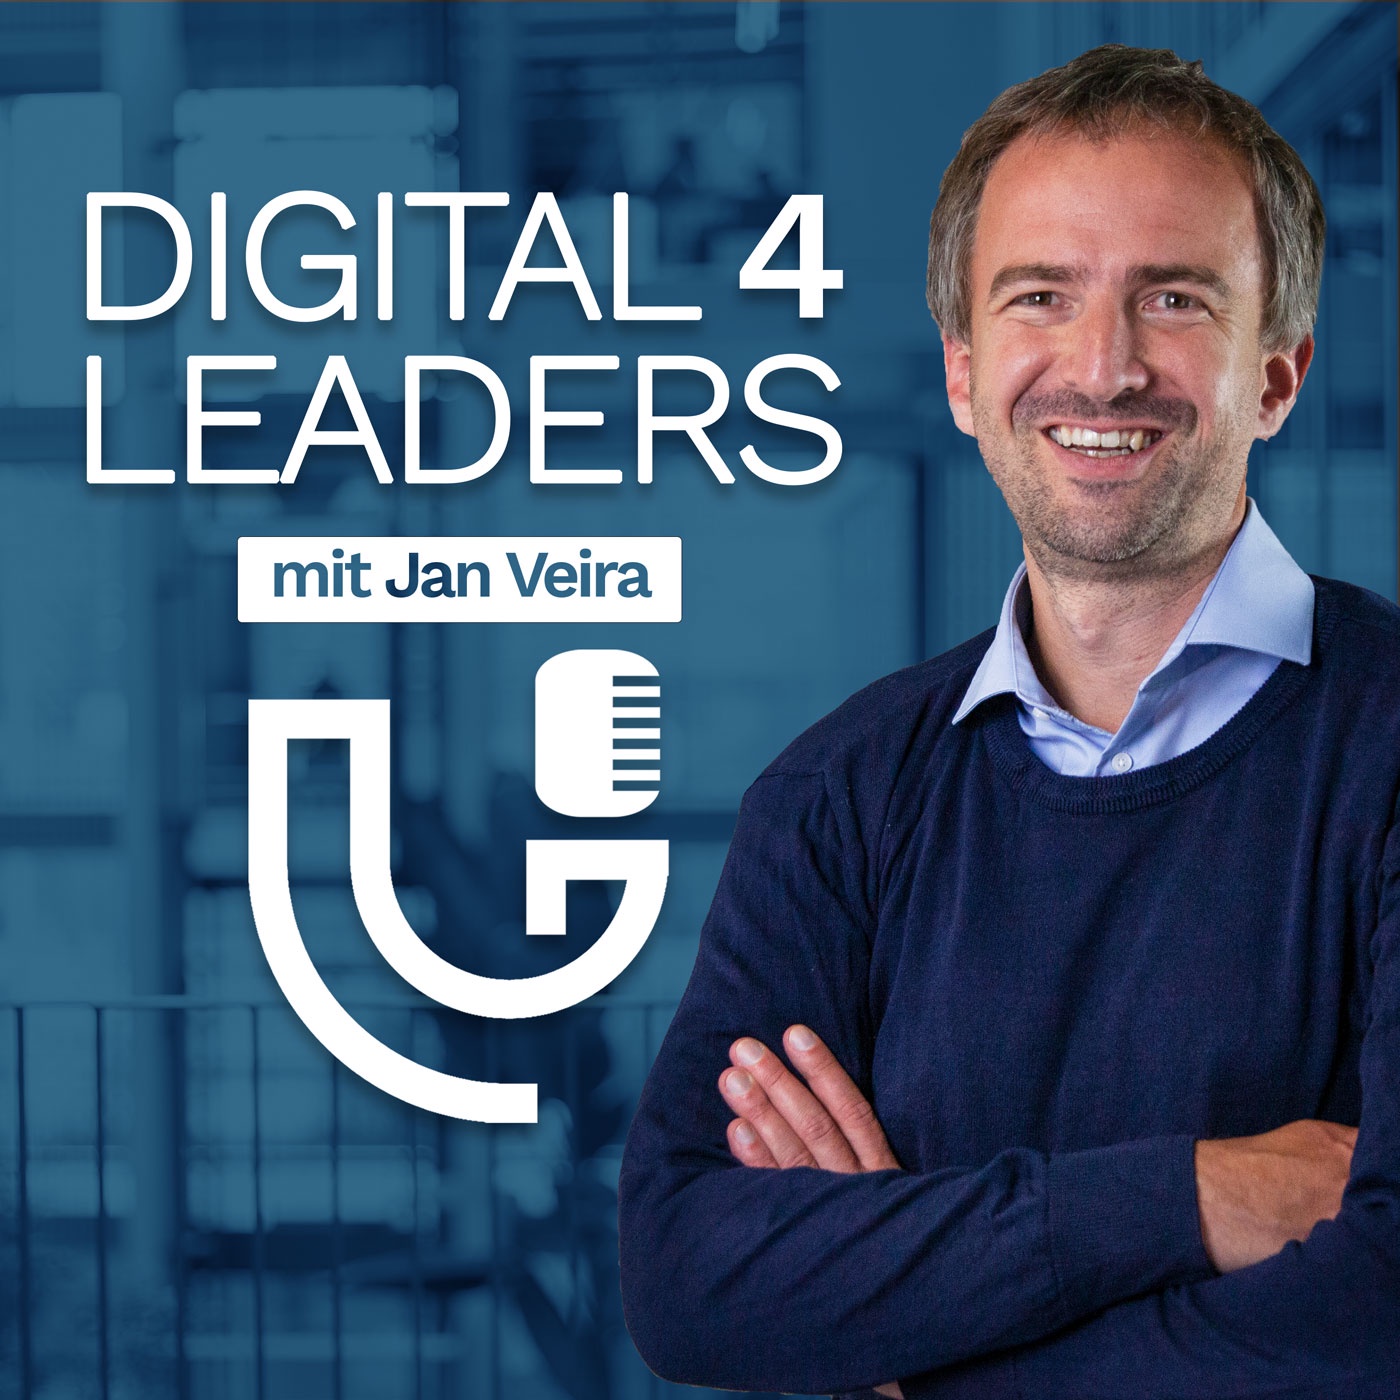 Digital4Leaders - der Bildungspodcast für Führungskräfte